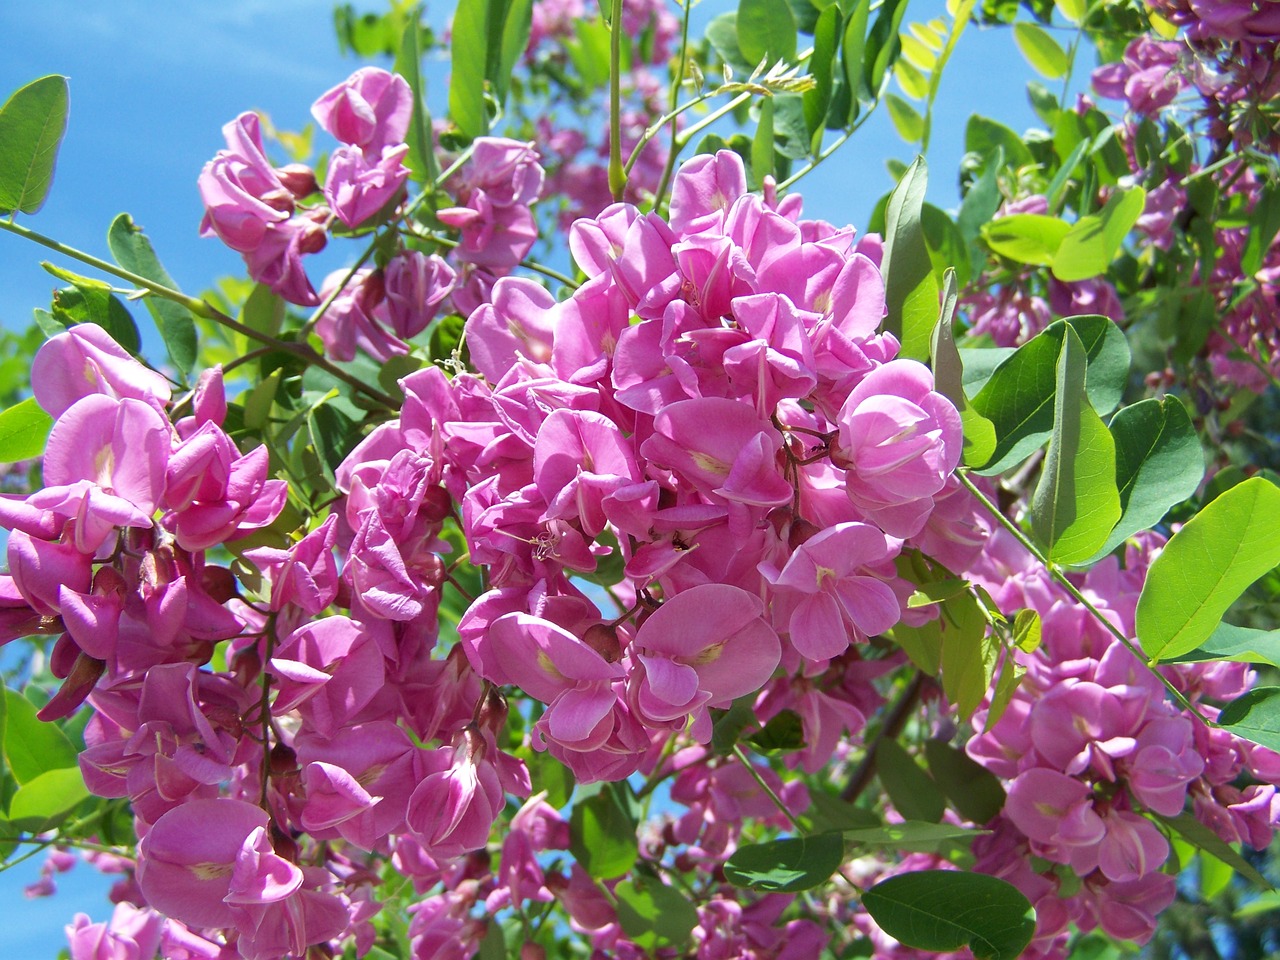 acacia lilac-pink spring free photo